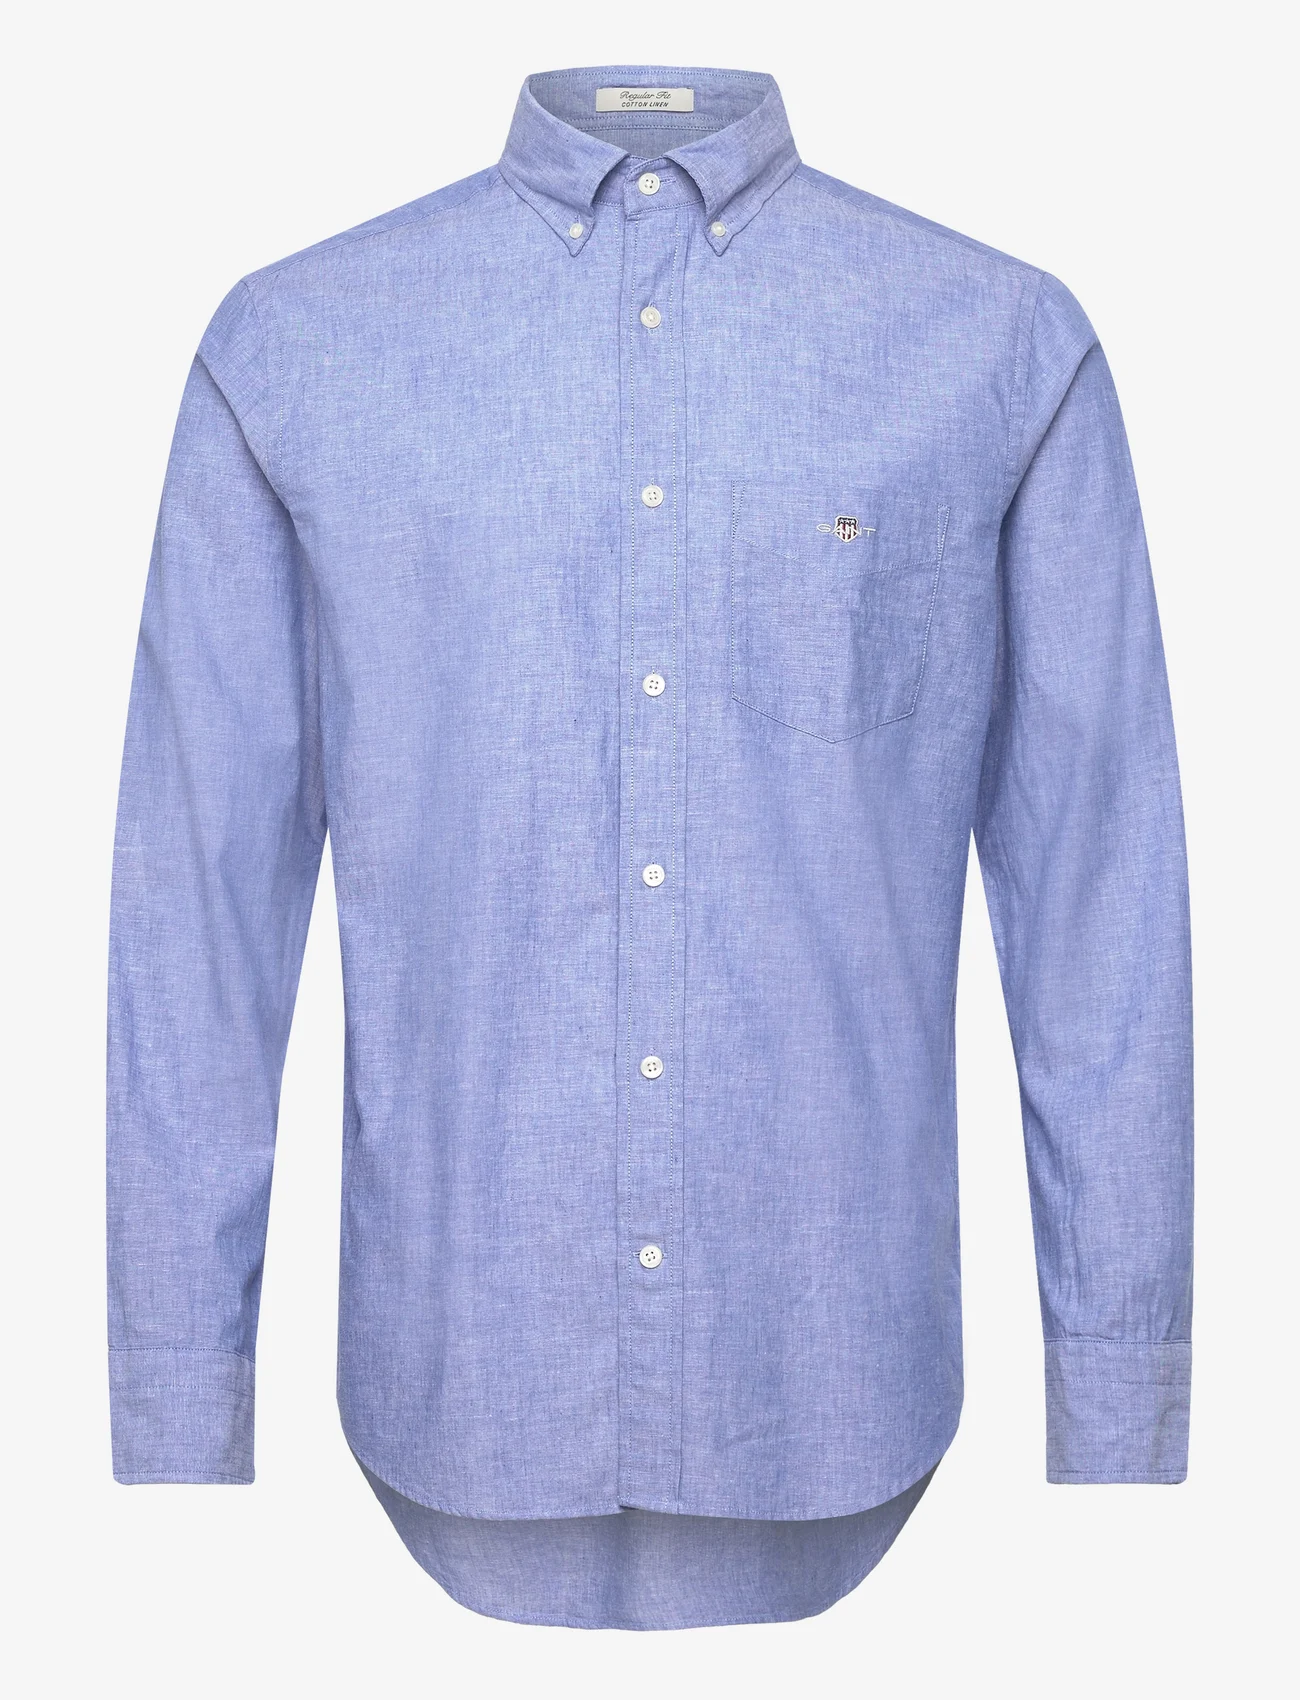 GANT - REG COTTON LINEN SHIRT - linnen overhemden - rich blue - 0